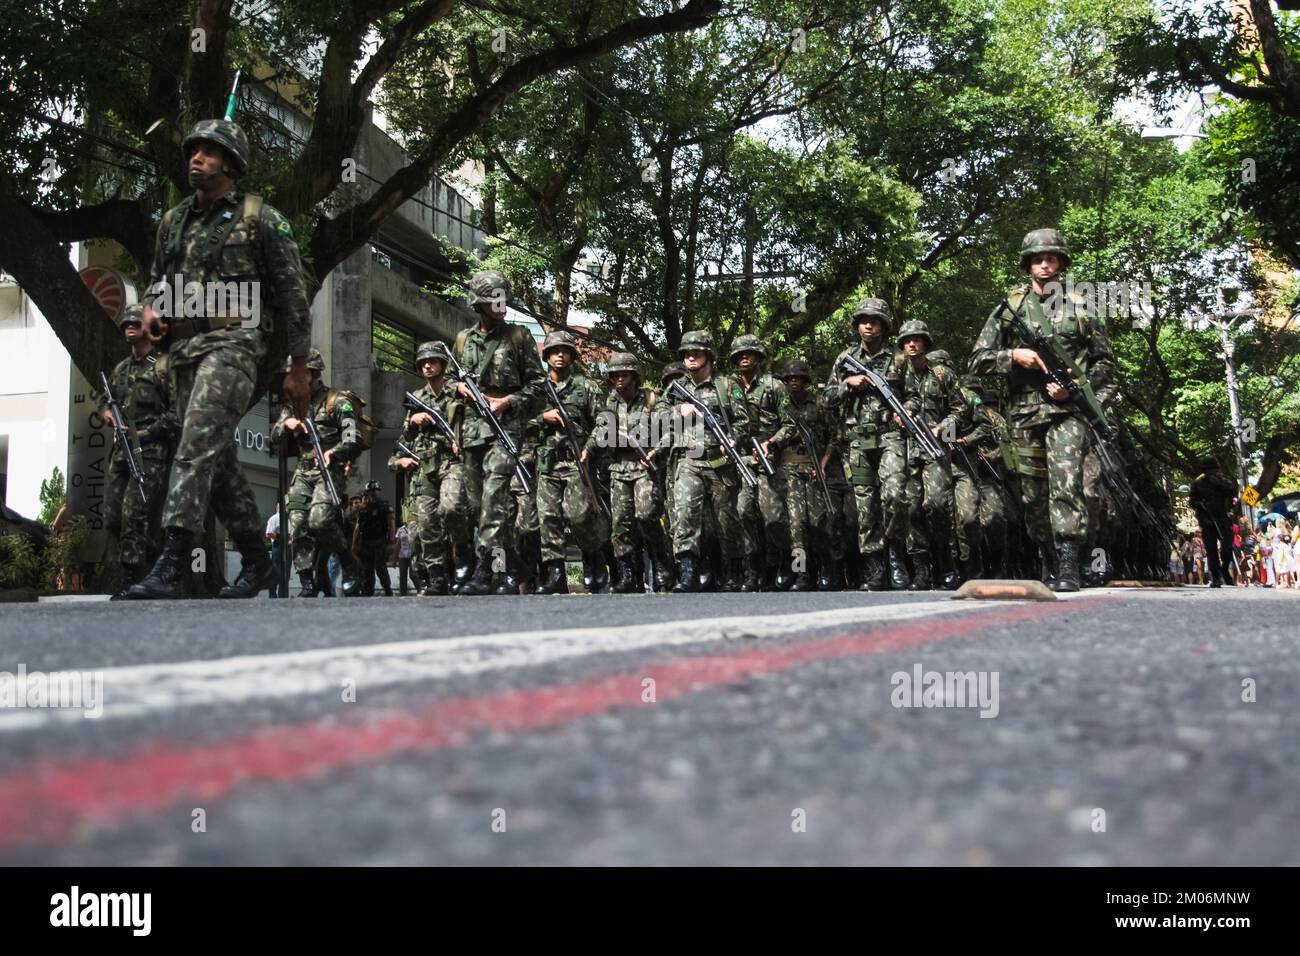 Salvador, Bahia, Brésil - 07 septembre 2016 : vue d'ensemble des soldats de l'armée brésilienne qui défilent dans les rues de Salvador, Bahia, le jour de l'indépendance. Banque D'Images